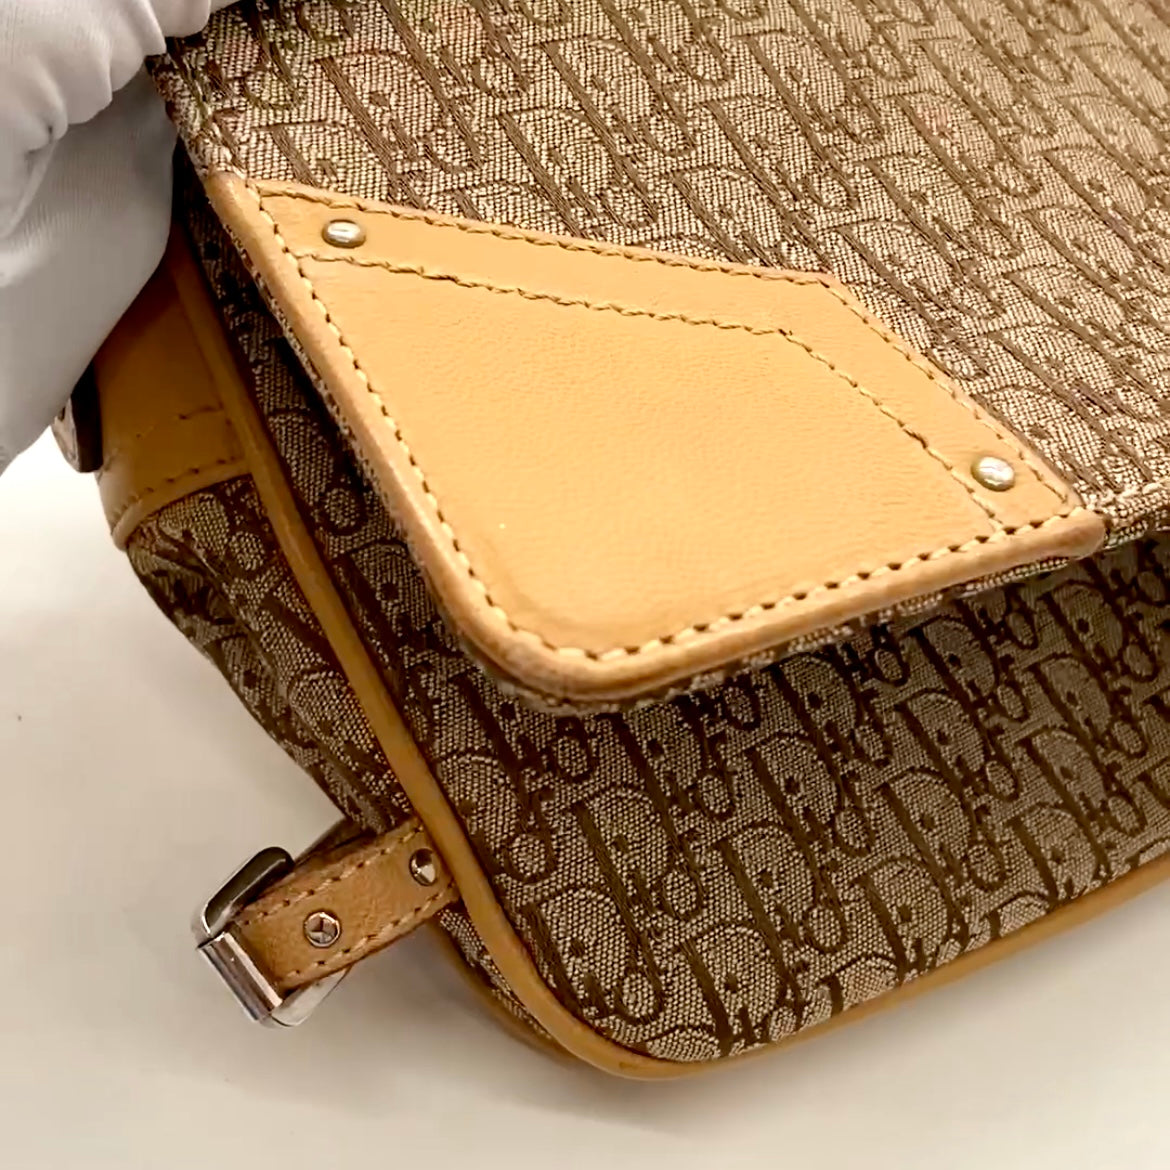 Vintage Christian Dior Trotter Clutch Handbag